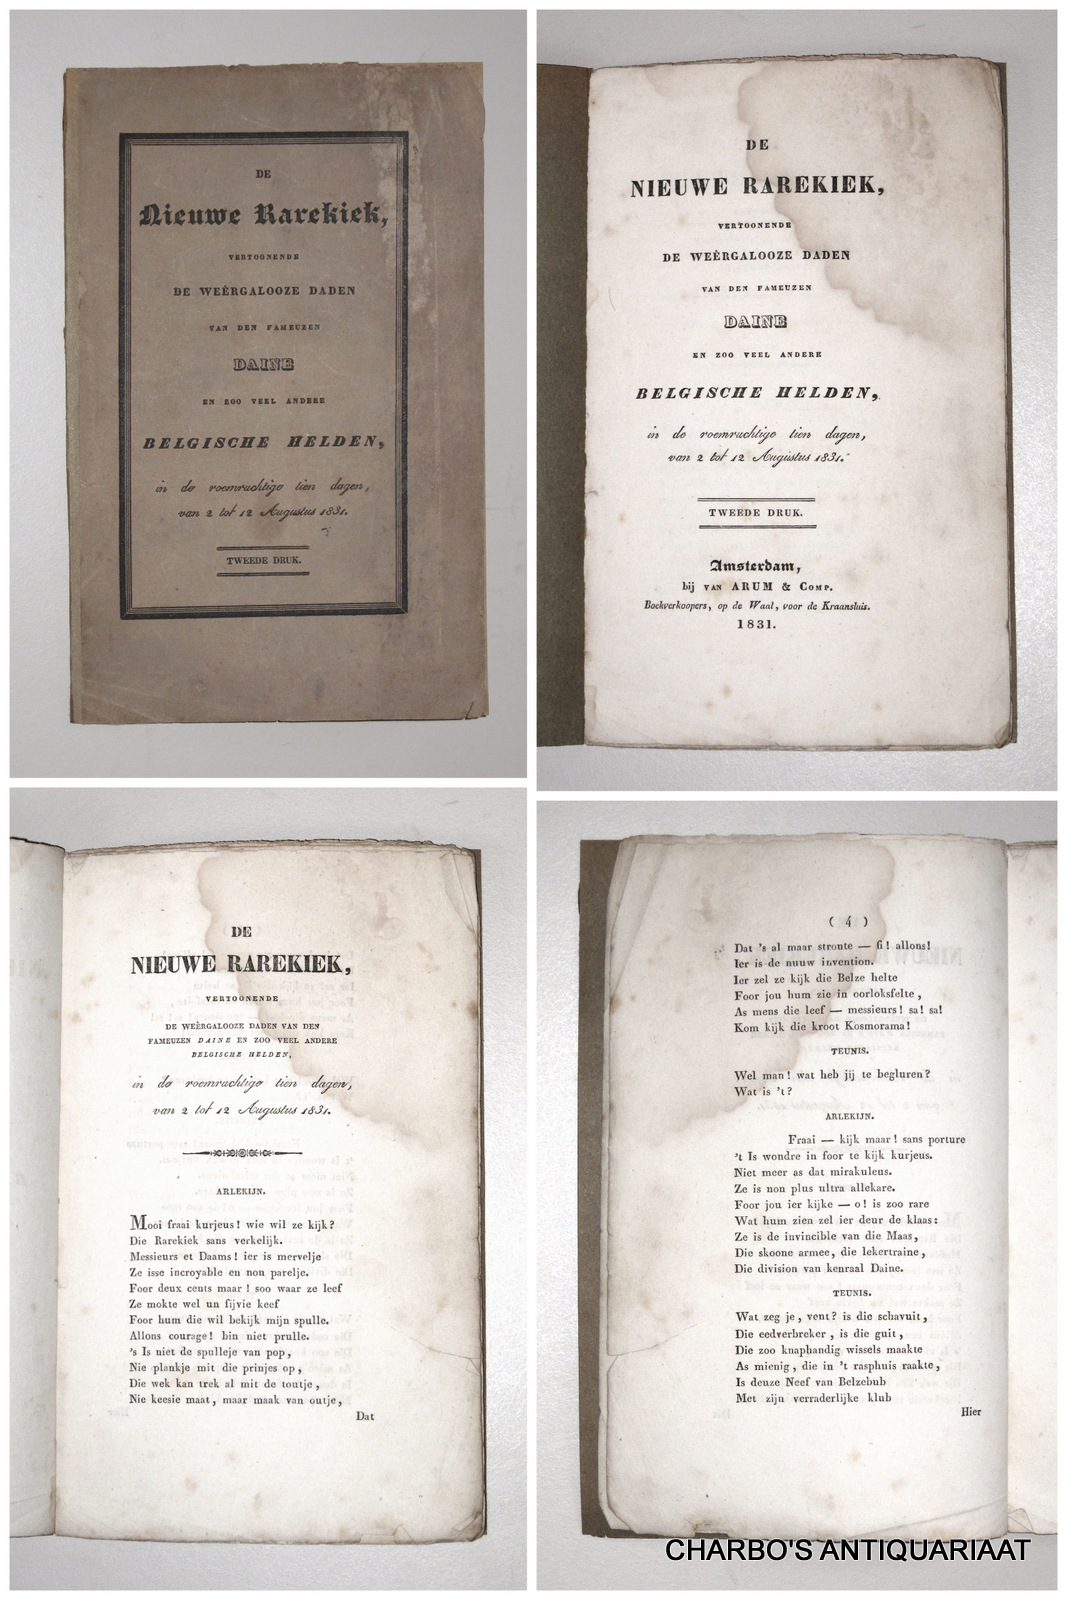 BREST VAN KEMPEN, J.J. (anon. gepubliceerd), -  De nieuwe rarekiek, vertoonende de wergalooze daden van den fameuzen Daine en zoo veel andere Belgische helden, van de roemruchtige tien dagen, van 2 tot 12 Augustus 1831.